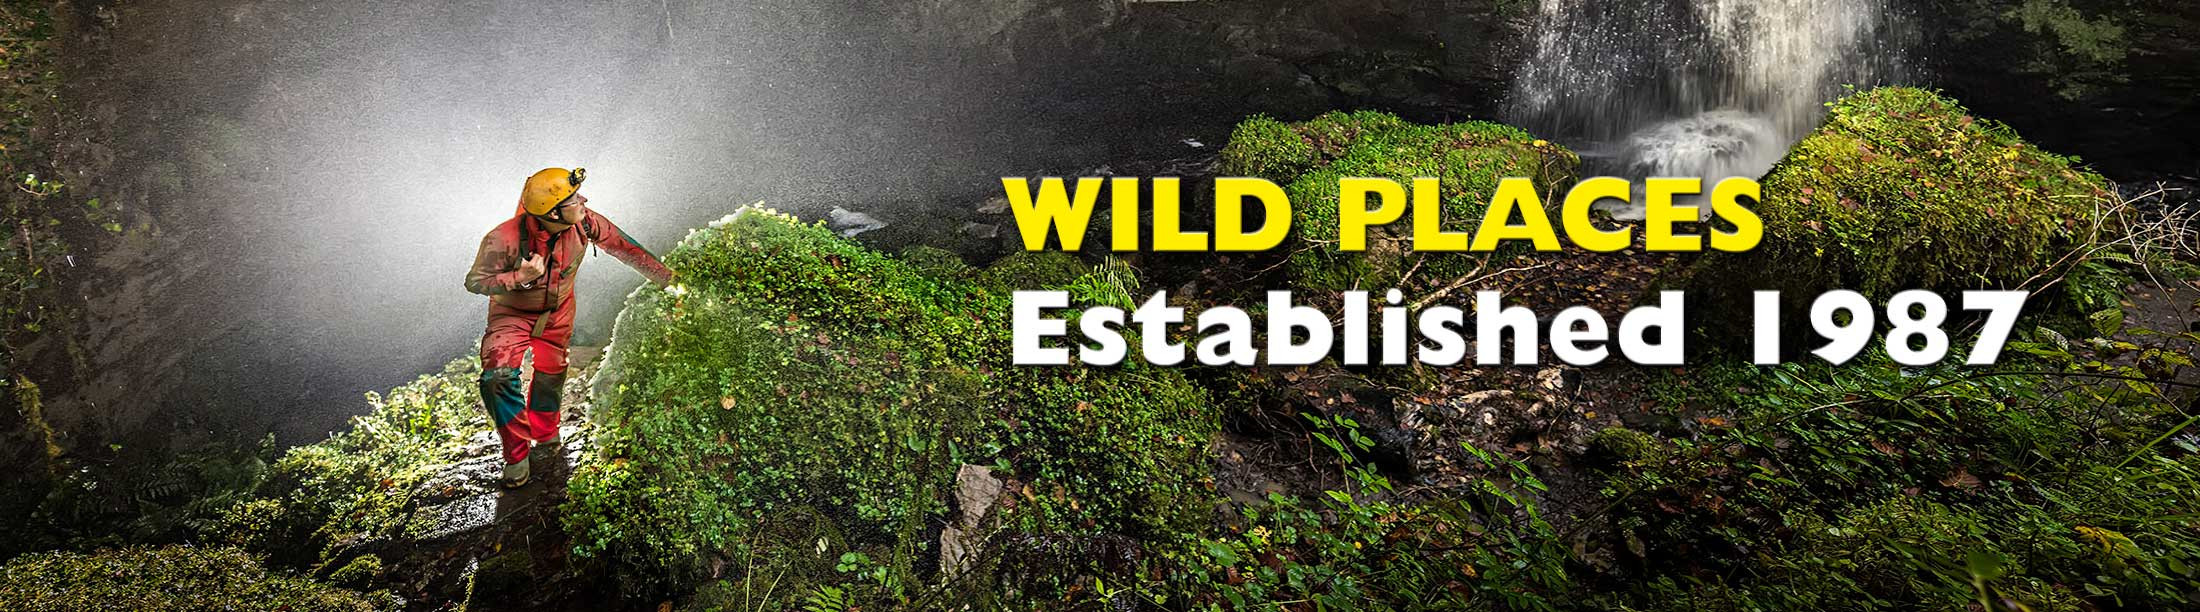 Wild Places Publishing